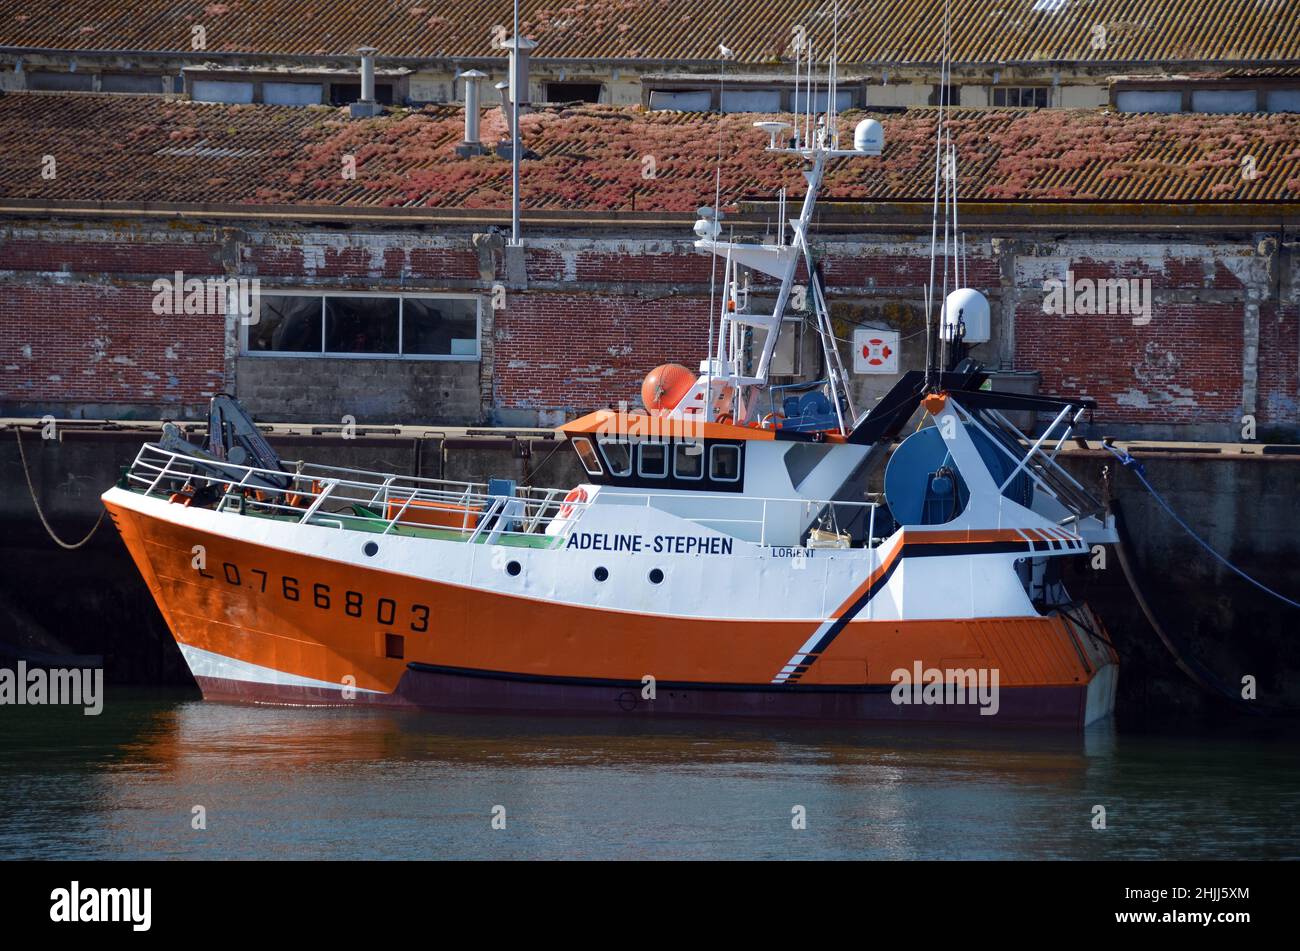 Un peschereccio nel porto di Lorient, Bretagna. Lorient è il secong francese porto di pesca dopo Boulogne sur mer nel nord della Francia. Foto Stock